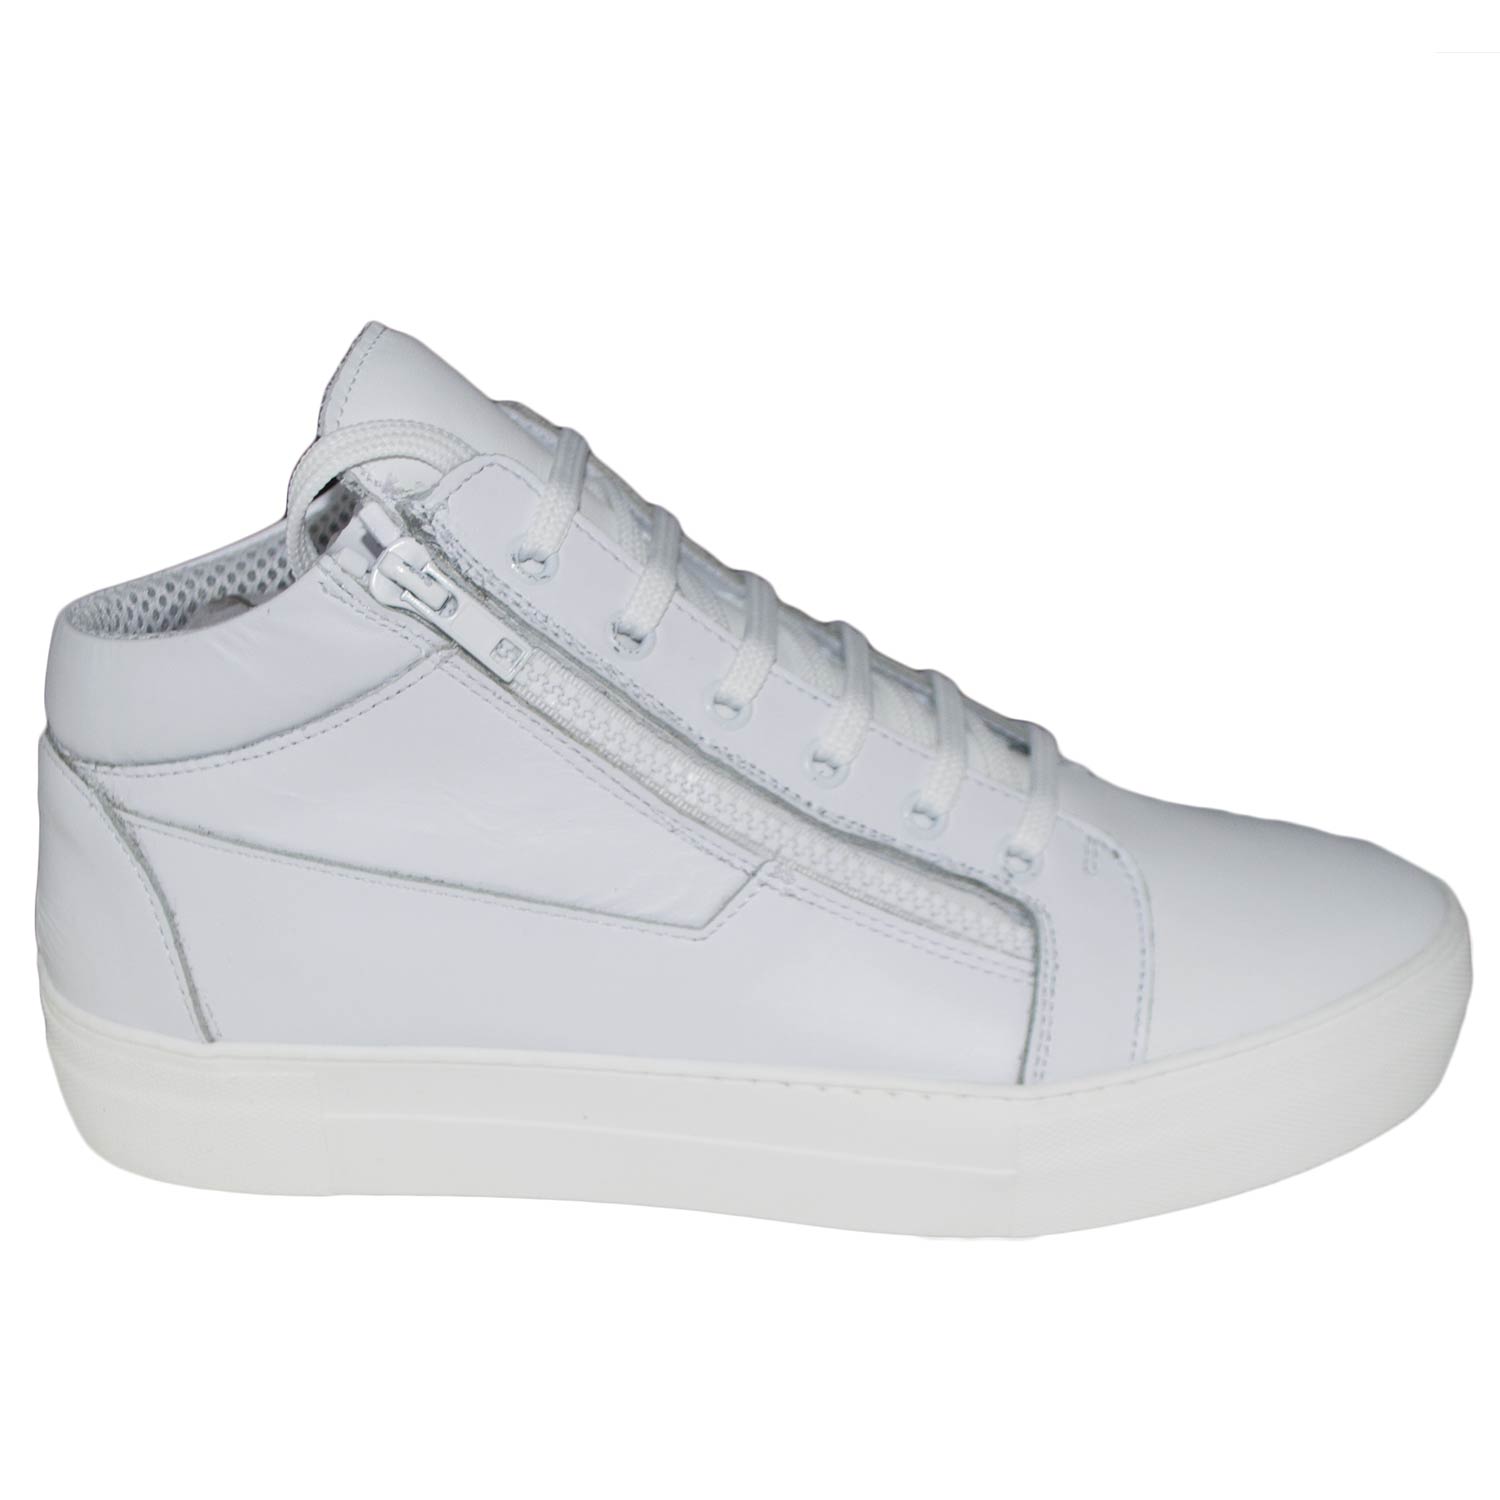 Sneakers alta uomo fondo doppio bianco antiscivolo due zip vera pelle nappa bianco lacci art 109895.